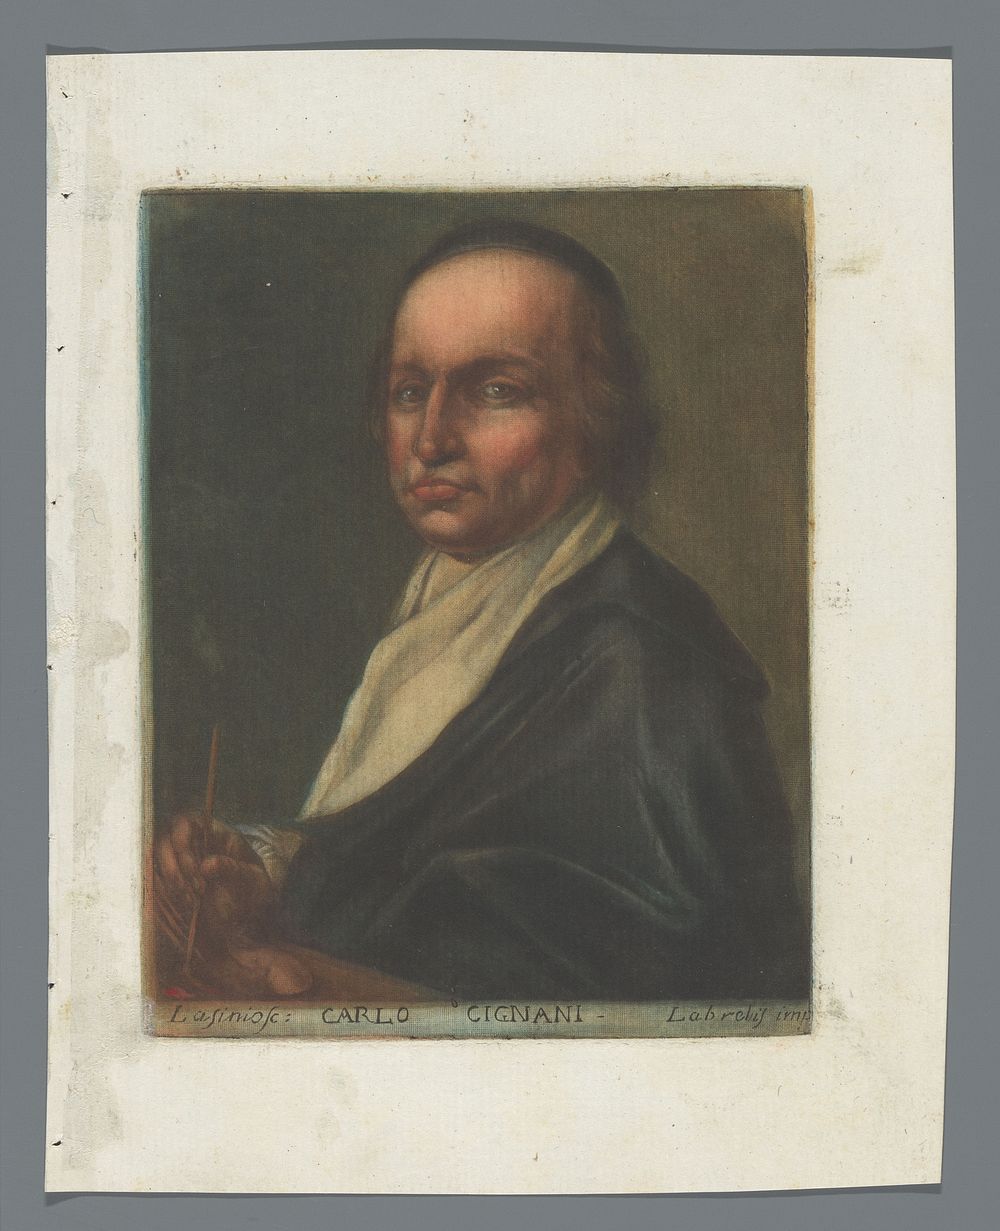 Portret van Carlo Cignani (1789) by Carlo Lasinio, Carlo Cignani and Labrelis